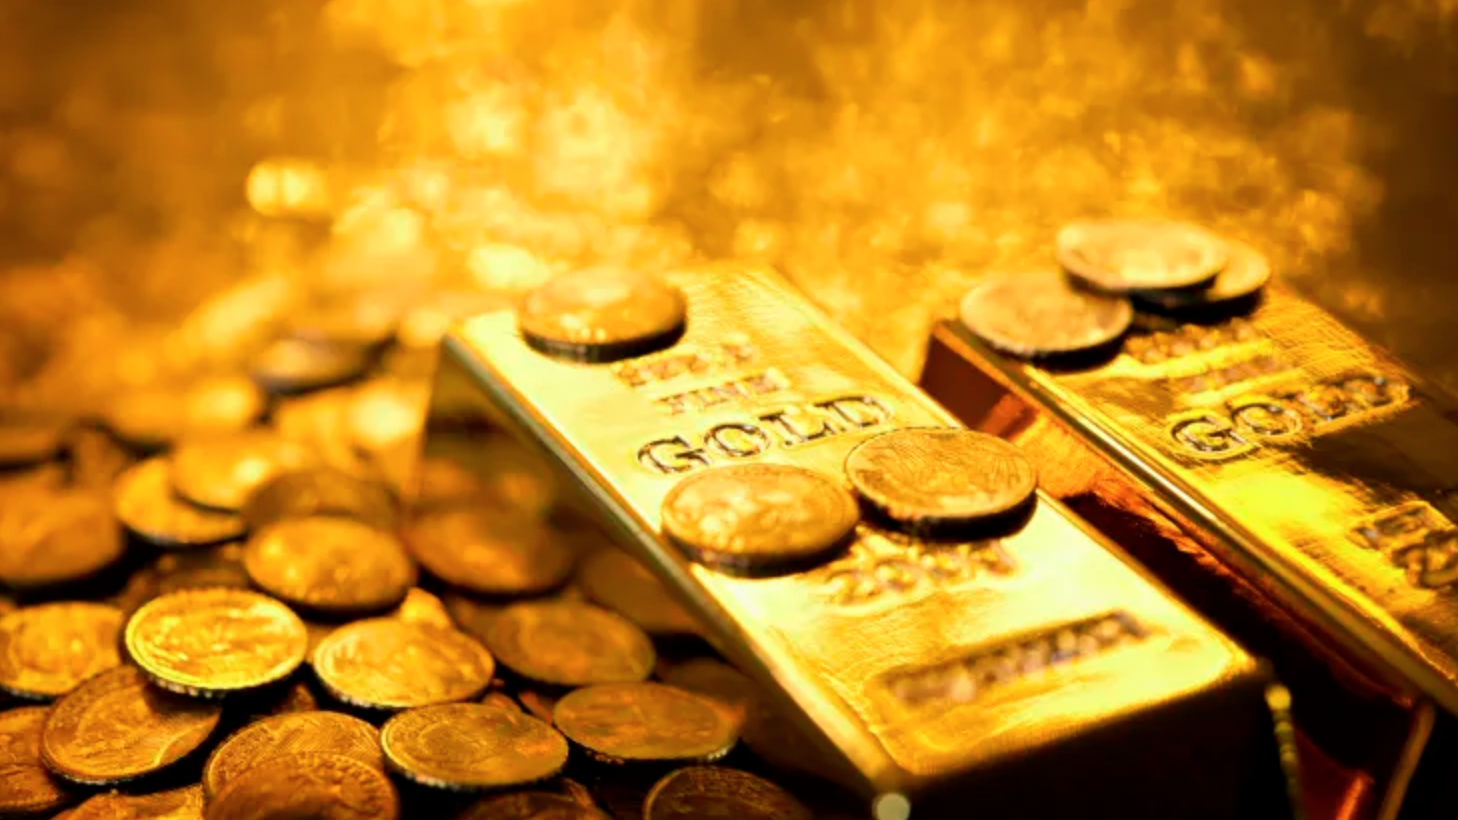 Gần đây, giá vàng đã biến động mạnh, có lúc vàng nhẫn điều chỉnh tăng lên mức 77 triệu đồng một lượng, mức chưa từng có trong lịch sử và giá vàng SJC đã sát mốc 85 triệu đồng một lượng.